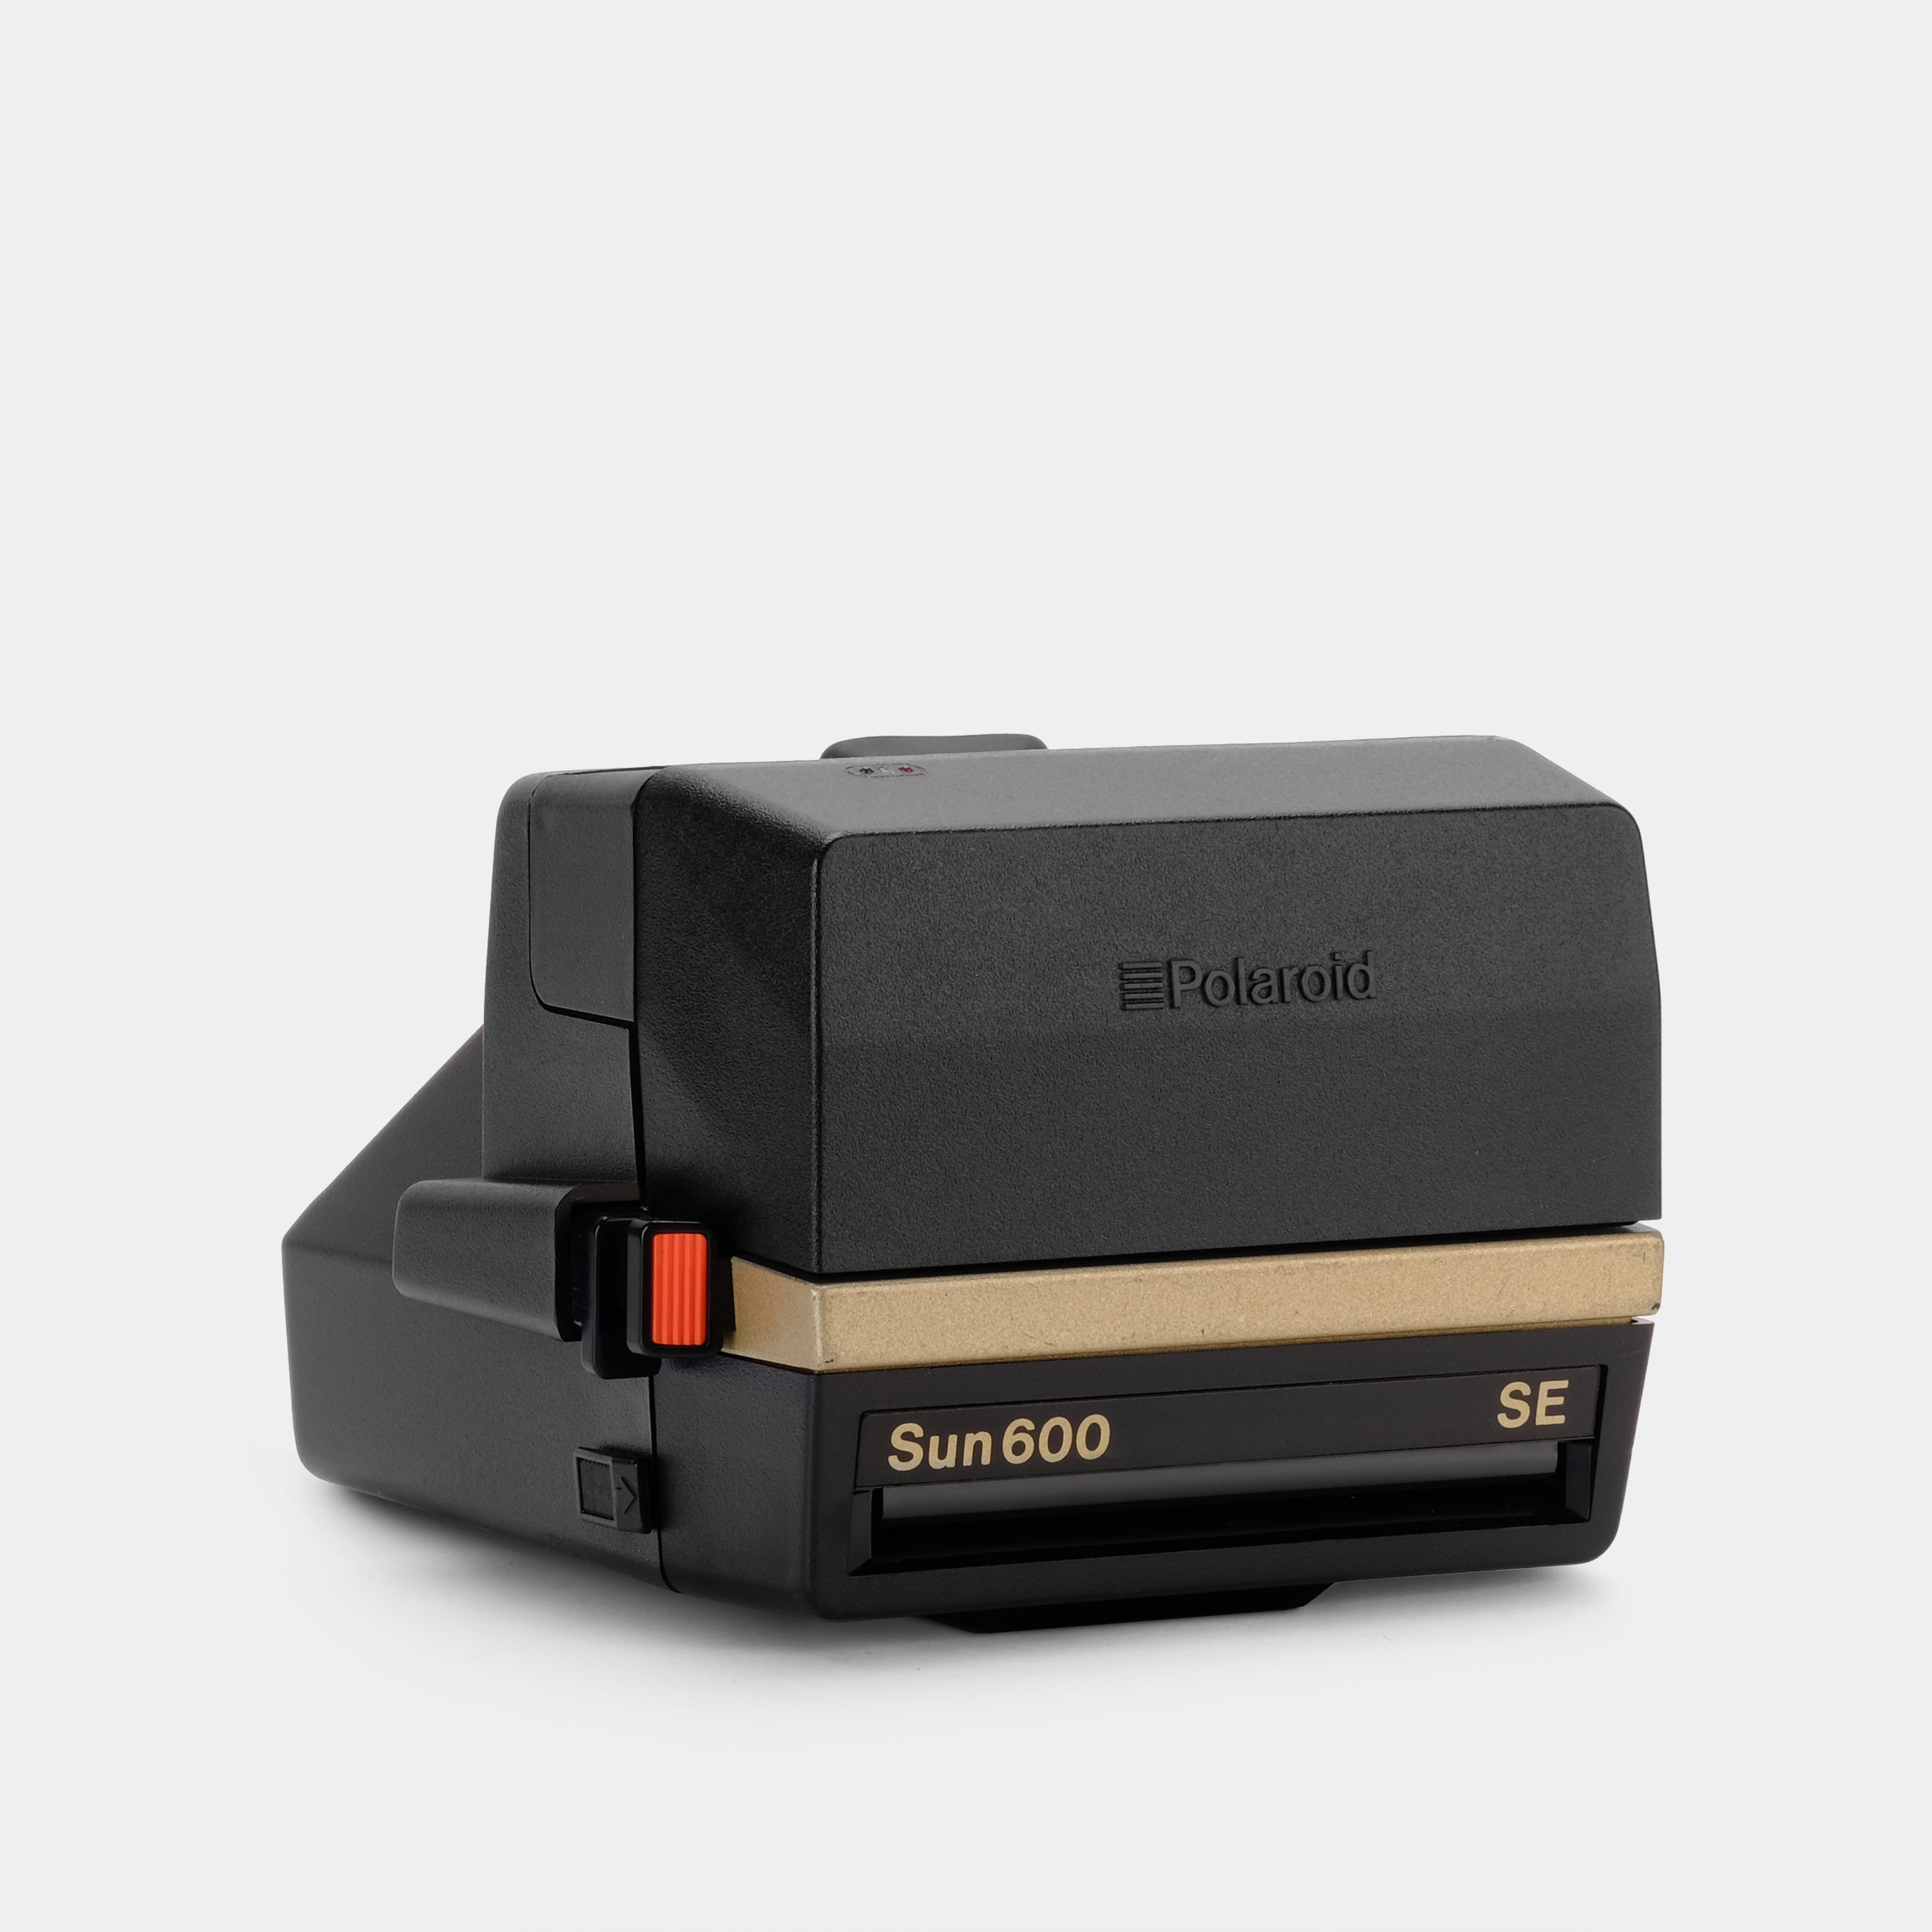 Polaroid 600 Sun600 SE 50th Anniversary Edition Gold Instant Film Camera